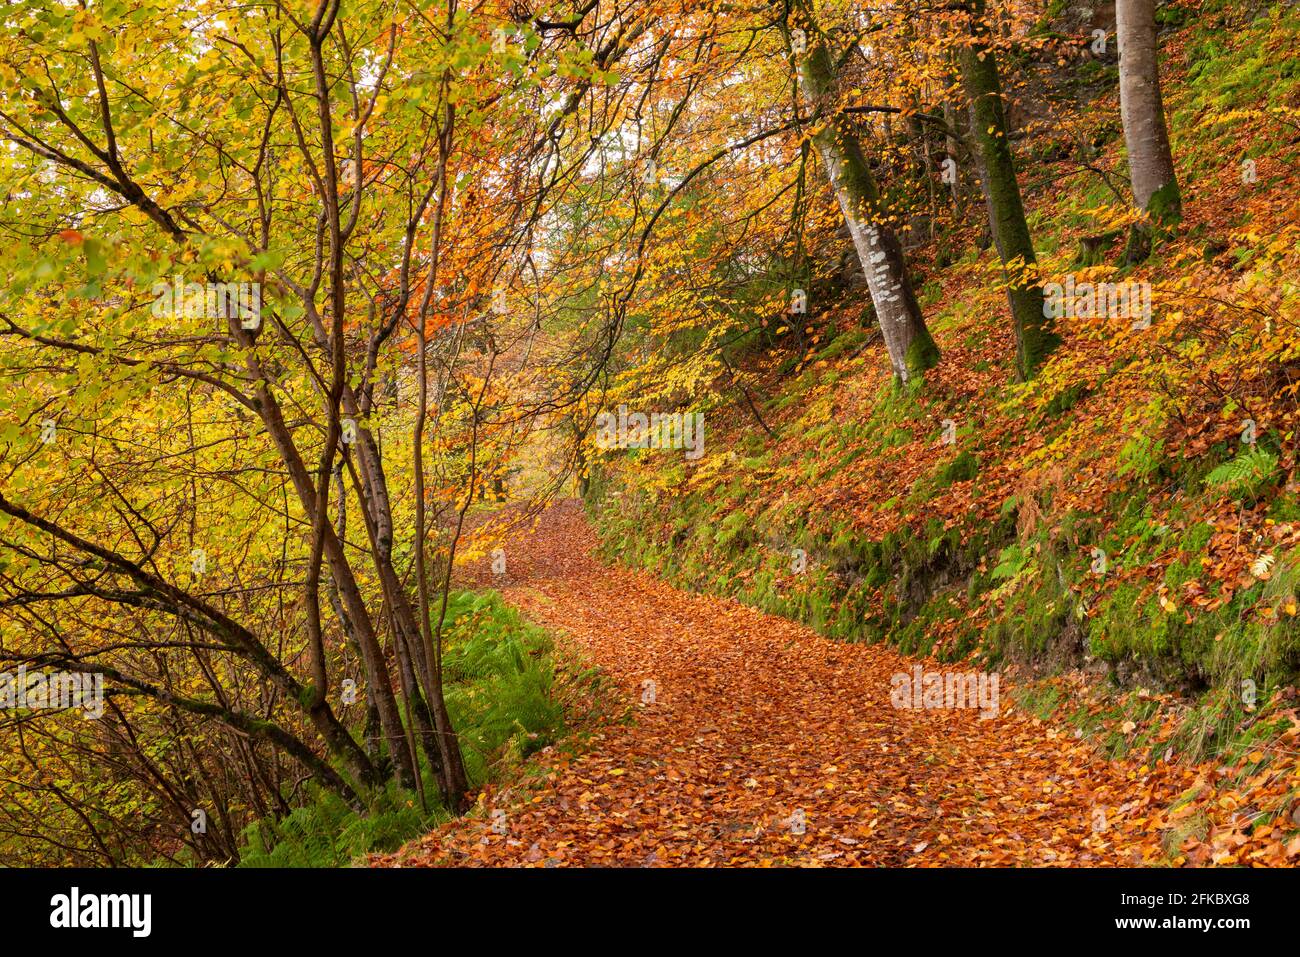 Sentier forestier à travers une forêt à feuilles caduques en automne, Watersmeet, Parc national d'Exmoor, Devon, Angleterre, Royaume-Uni, Europe Banque D'Images